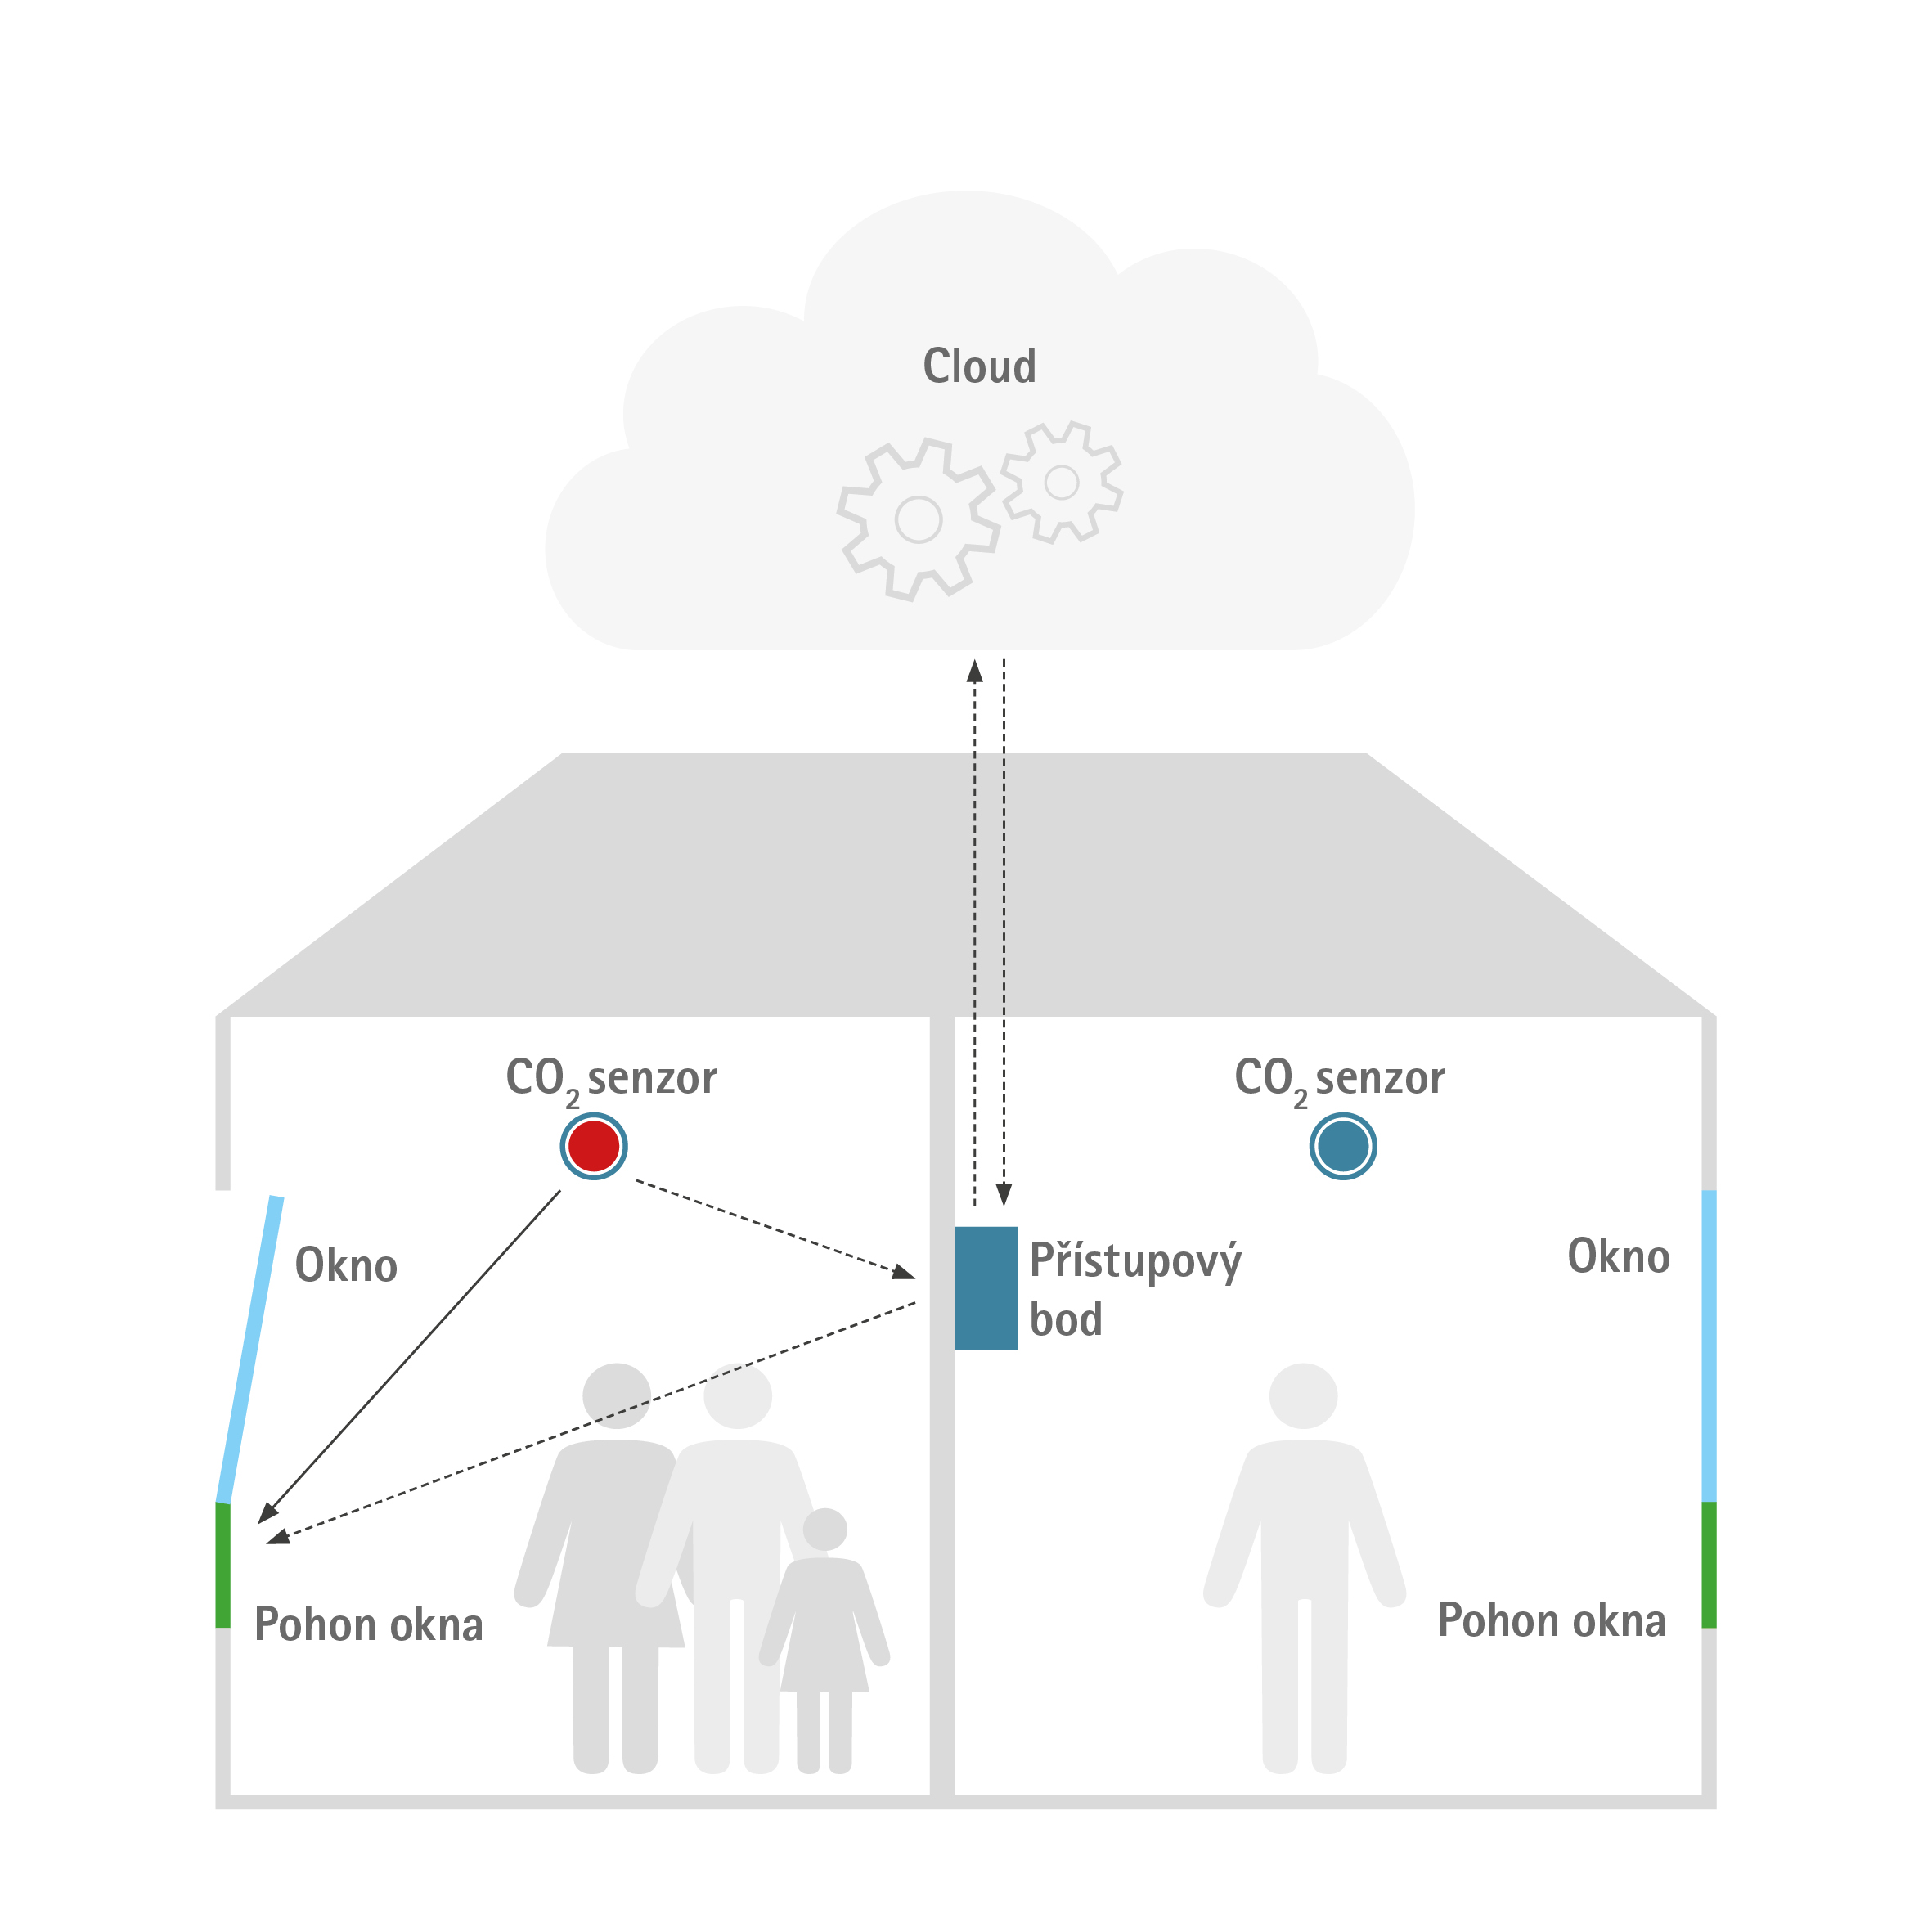 Jednoduchý příklad s a) přímou komunikací mezi senzorem CO2 a motorem okna a b) tokem signálu přes přístupový bod a cloud.